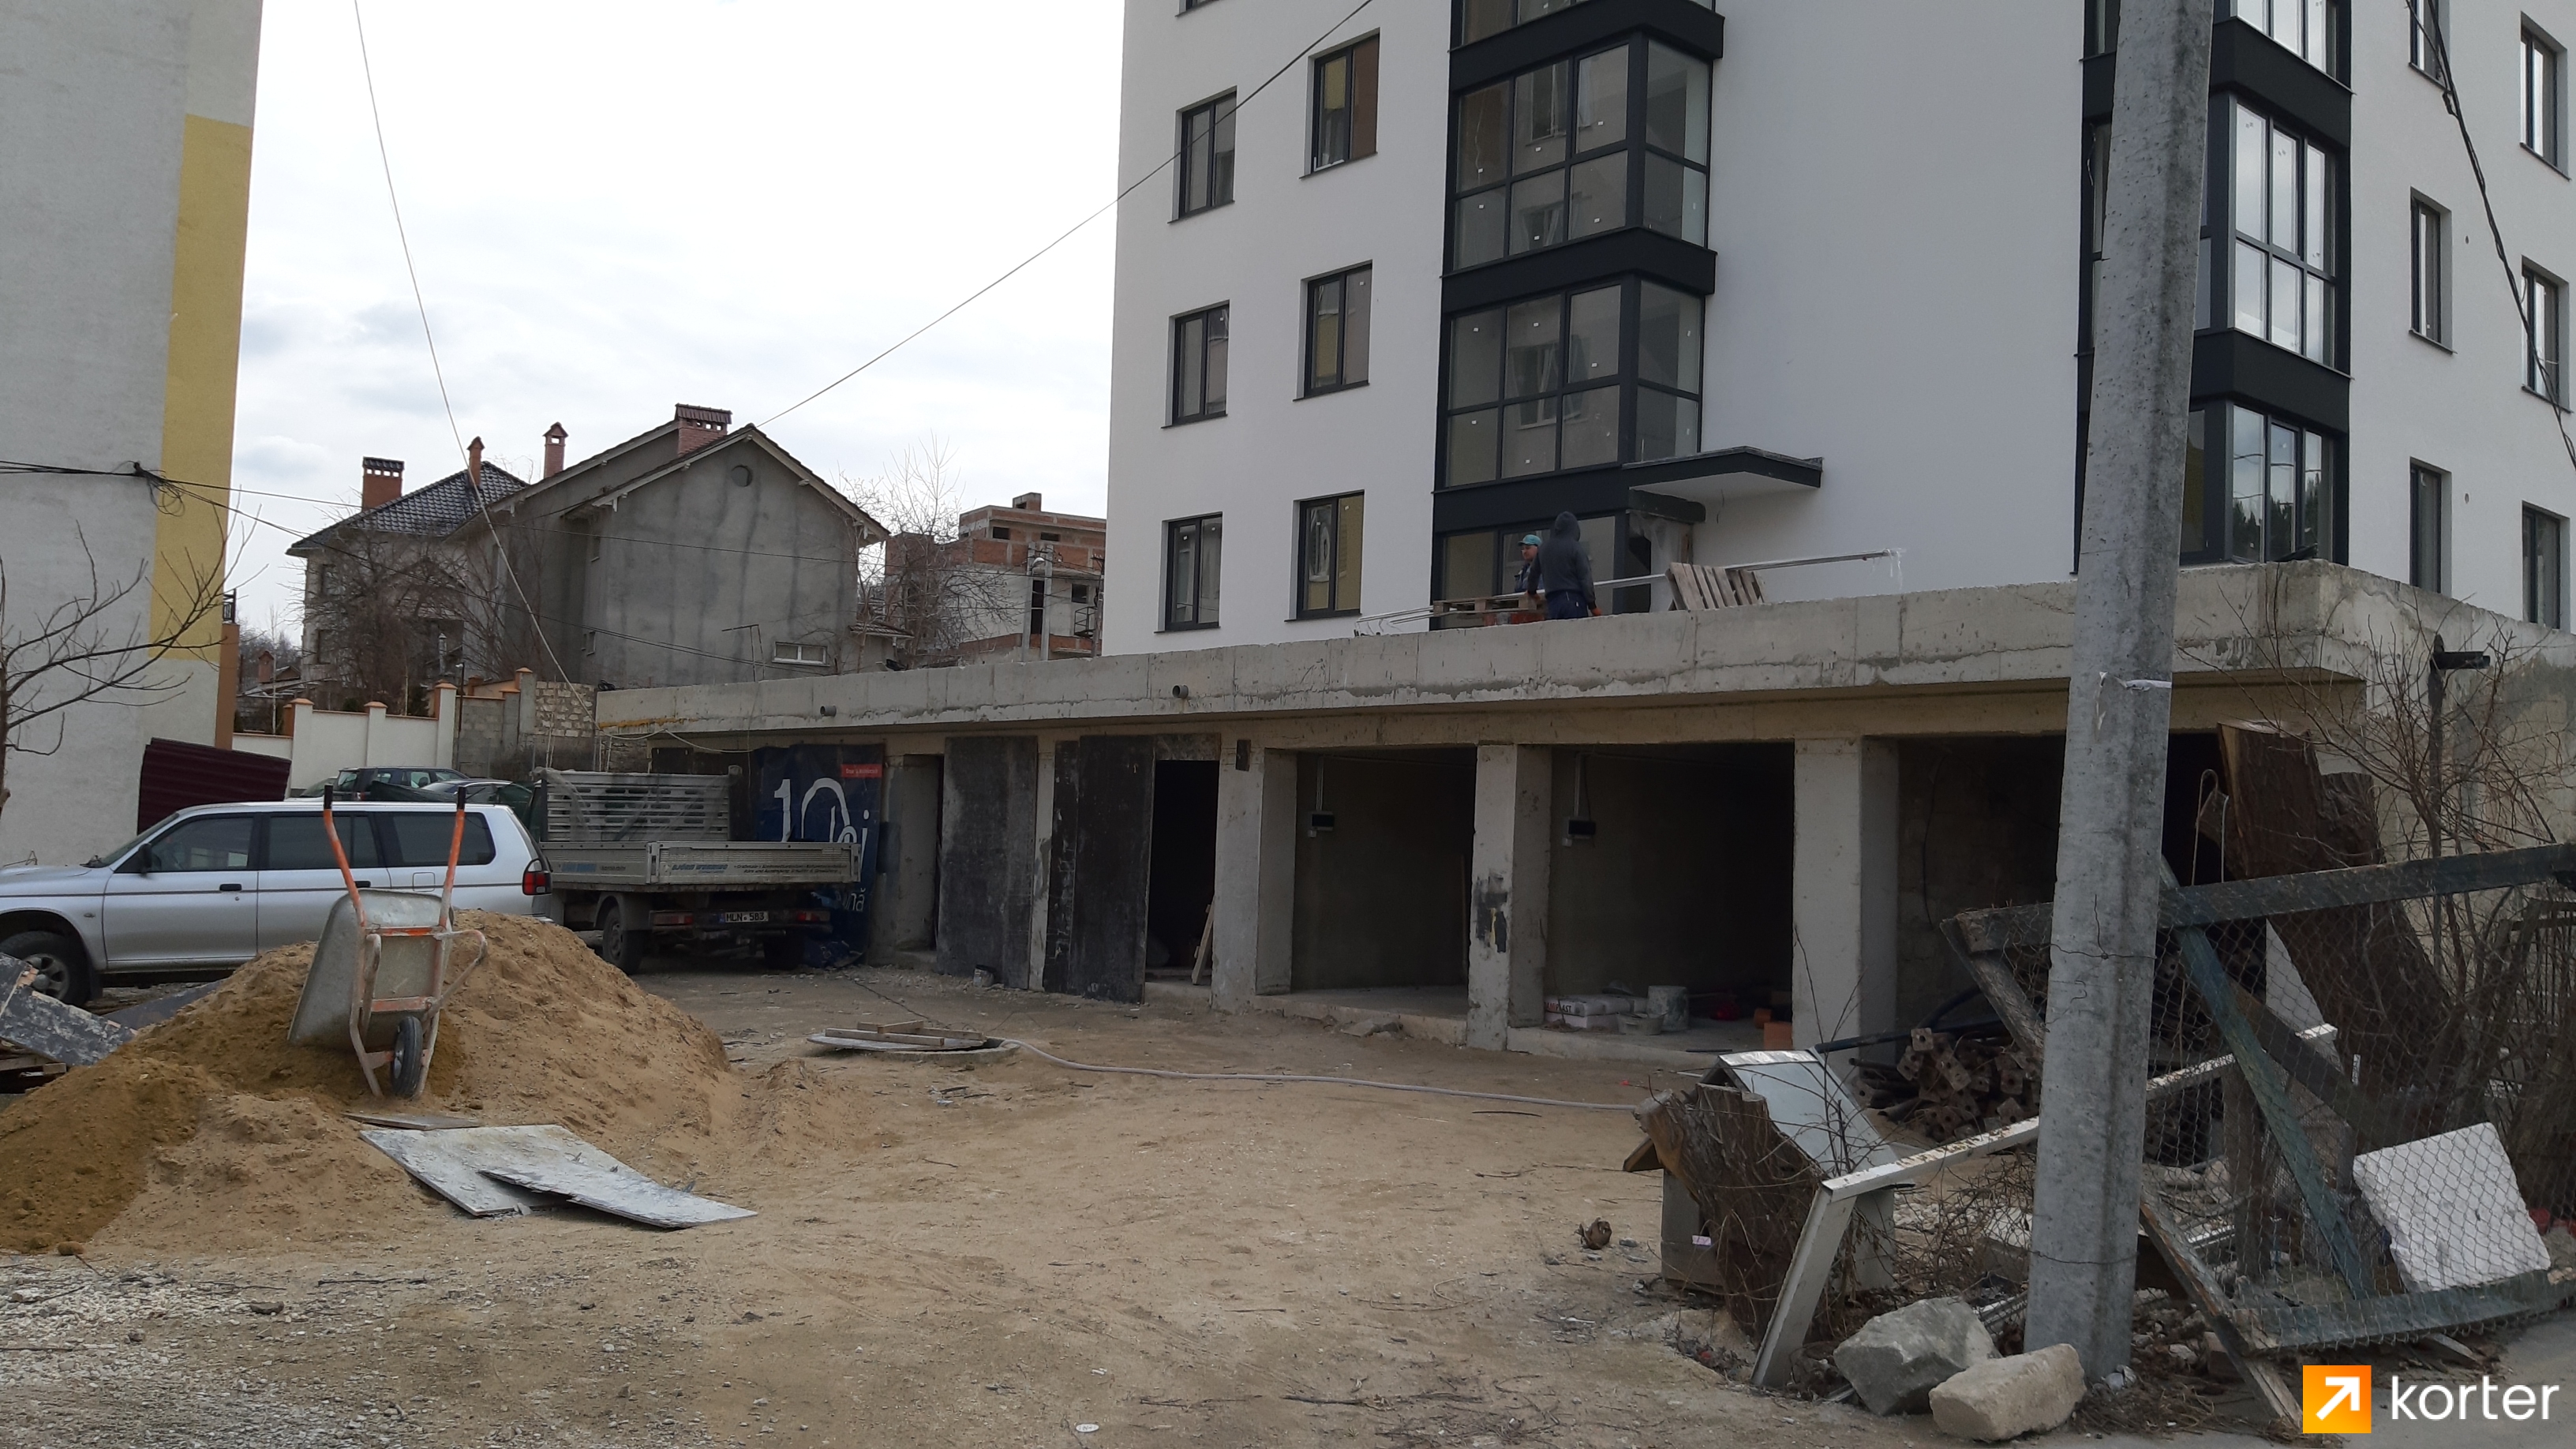 Evoluția construcției Complexului Bloc Locativ Ghioceilor 9 - Punct 5, Februarie 2020